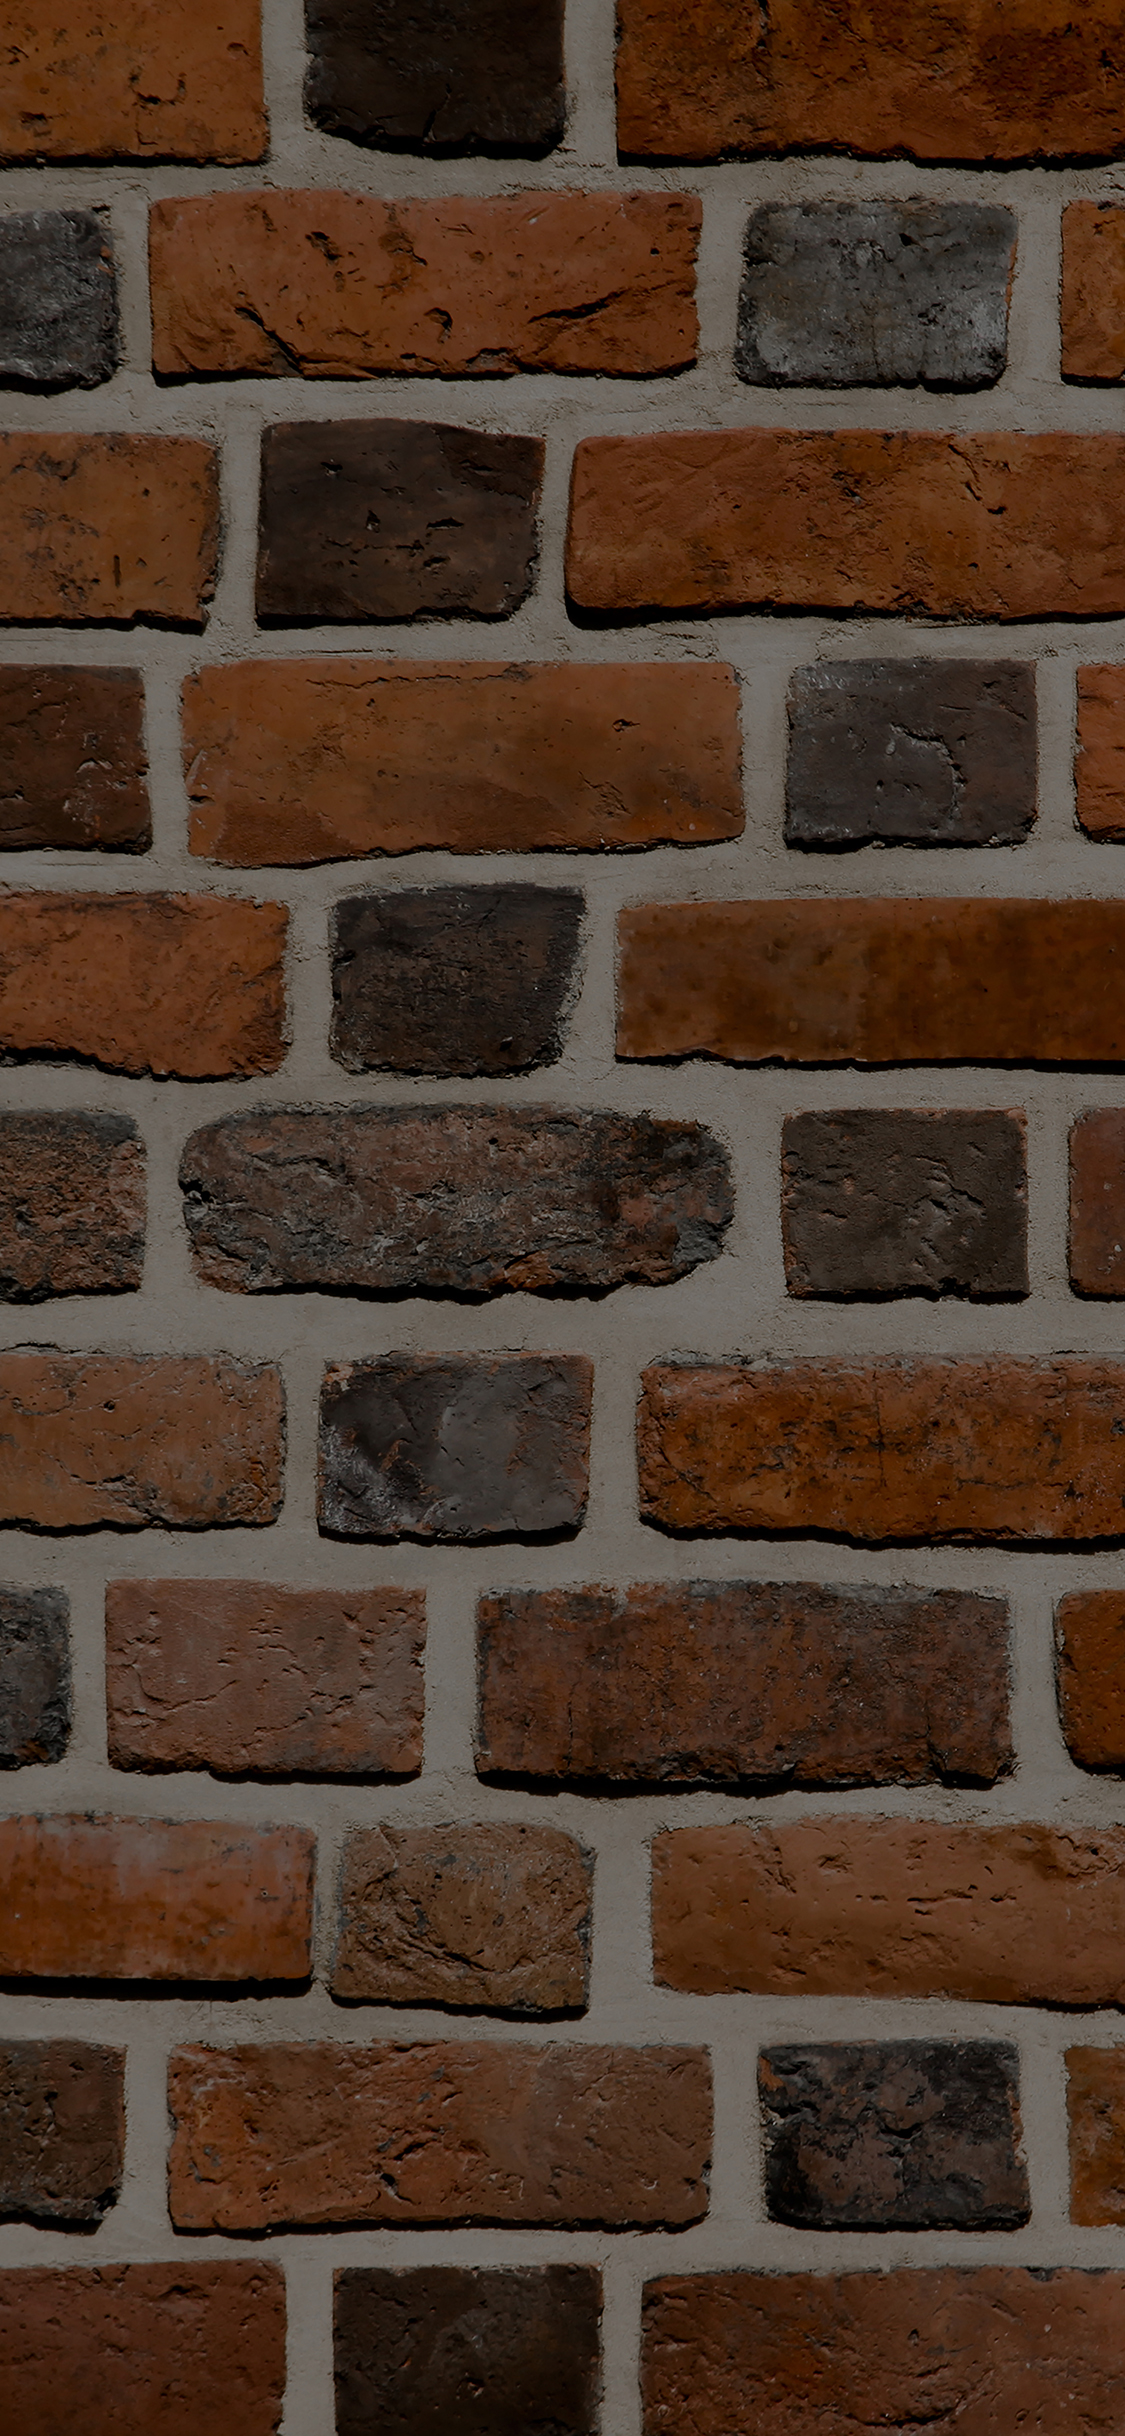 Com Apple Iphone Wallpaper Vf56 Brick Texture Wall - Iphone X Wallpaper Bricks - HD Wallpaper 